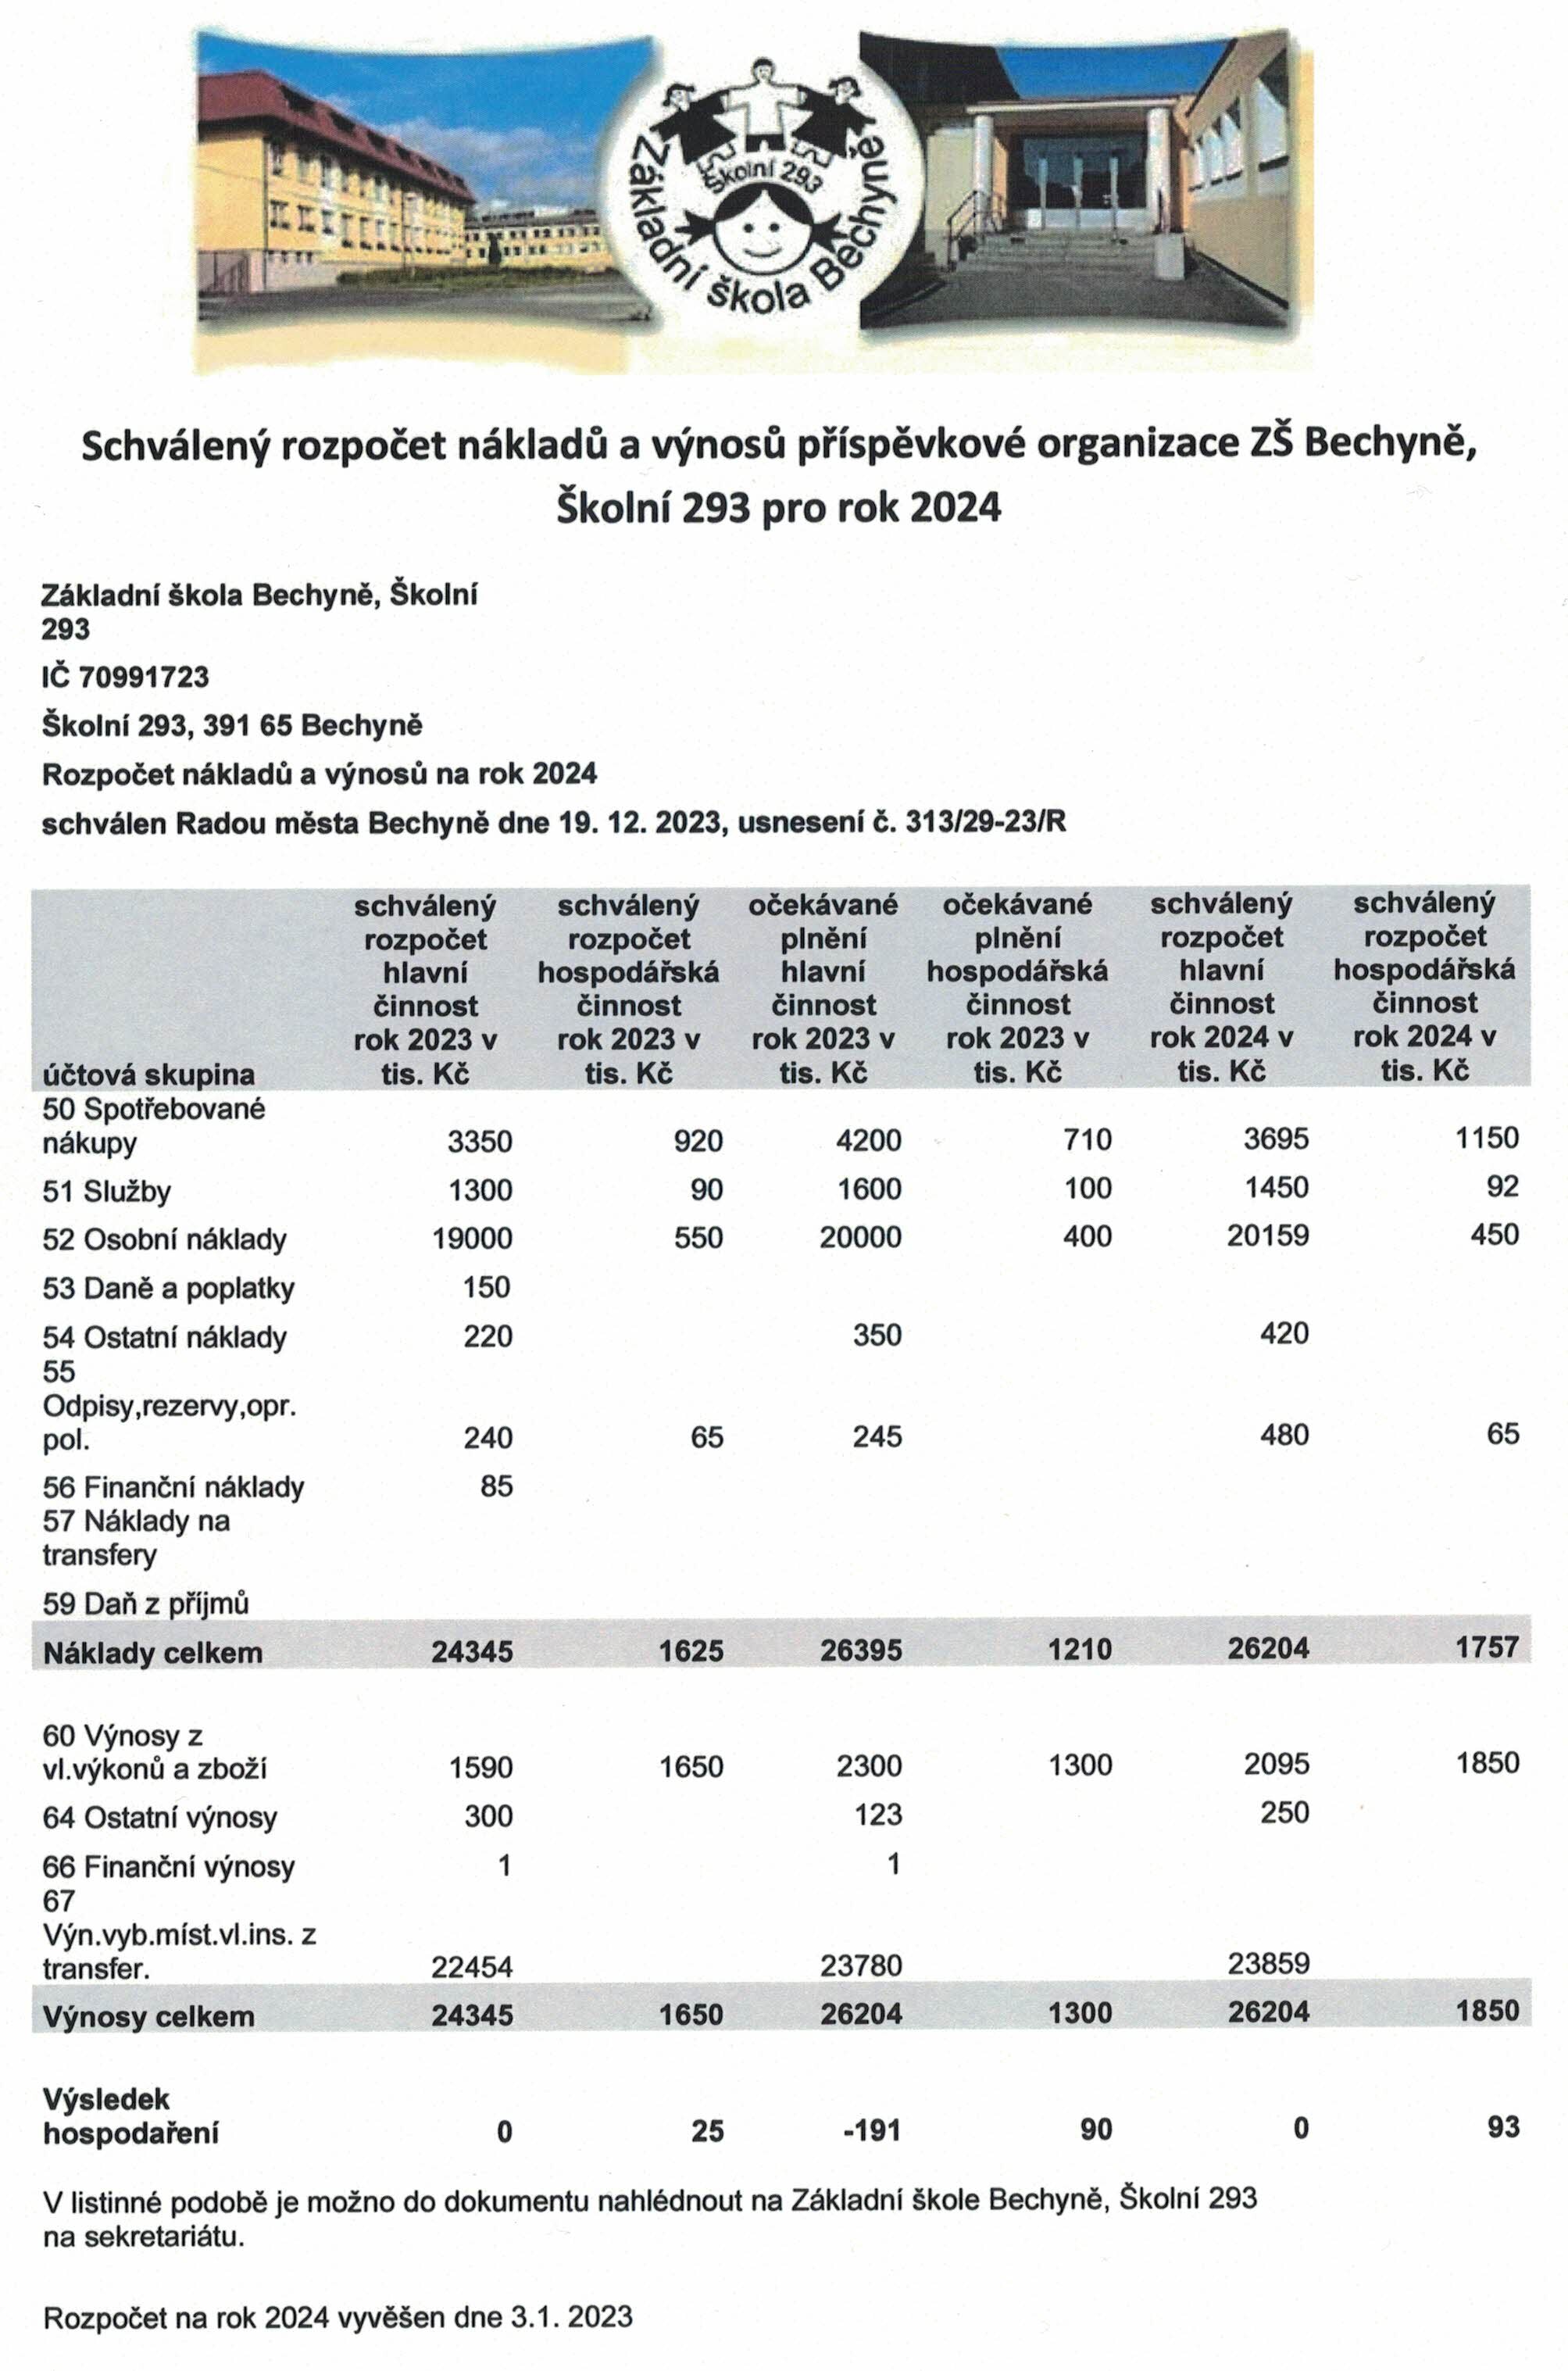 Schválený rozpočet nákladů a výnosů příspěvkové organizace ZŠ Bechyně, Školní 293 pro rok 2024